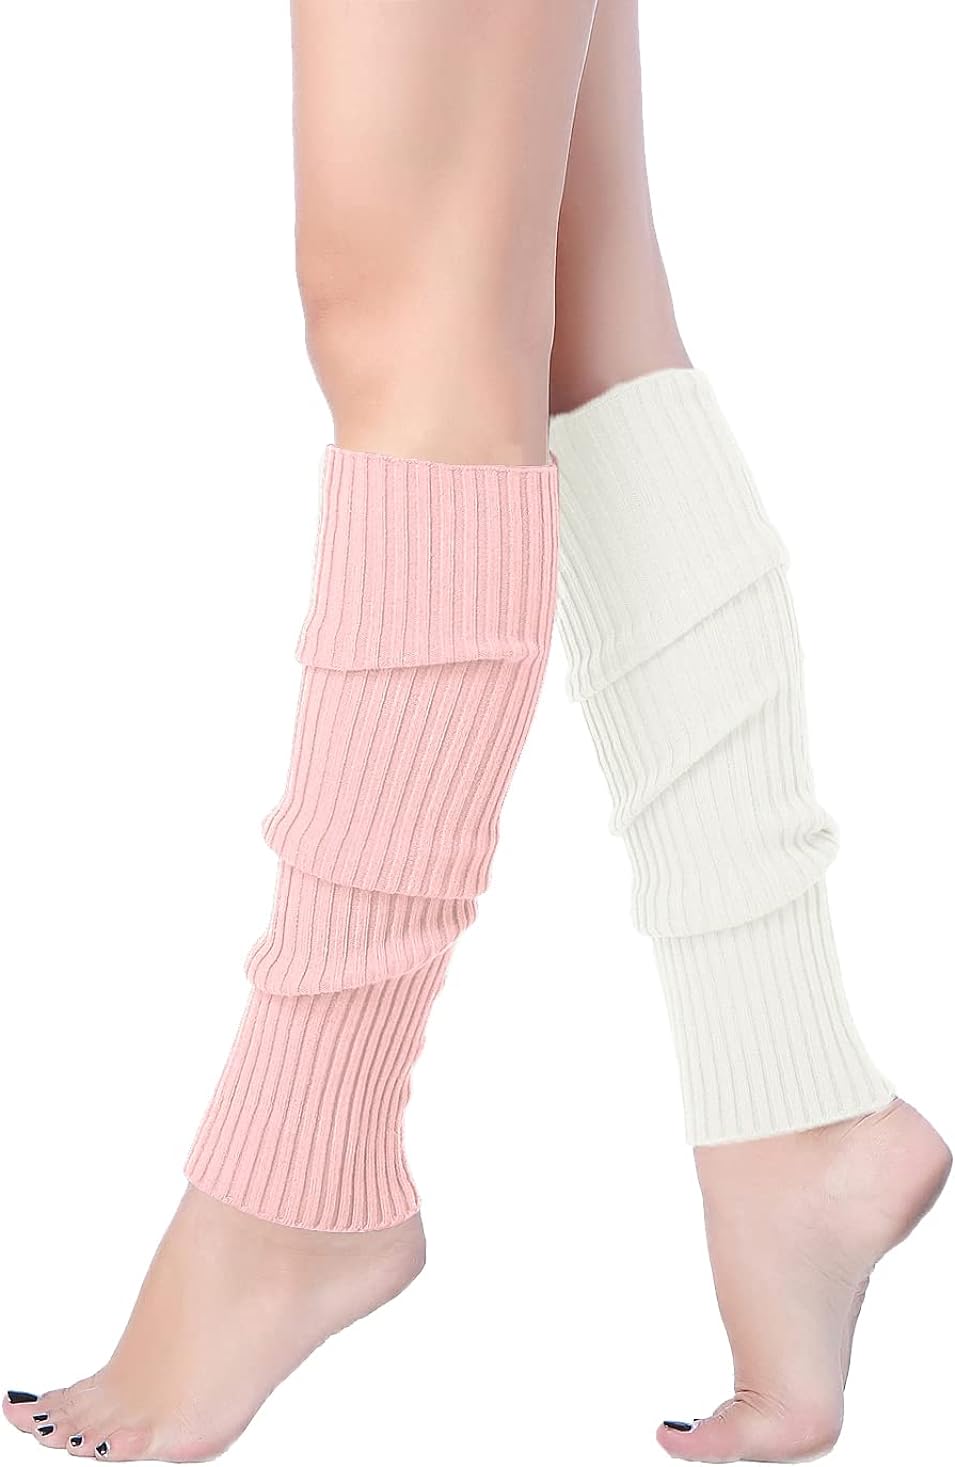 v28 Women Warm Leg Warmers 80s Retro Party Costume Knit Ballet Neon Long  Socks